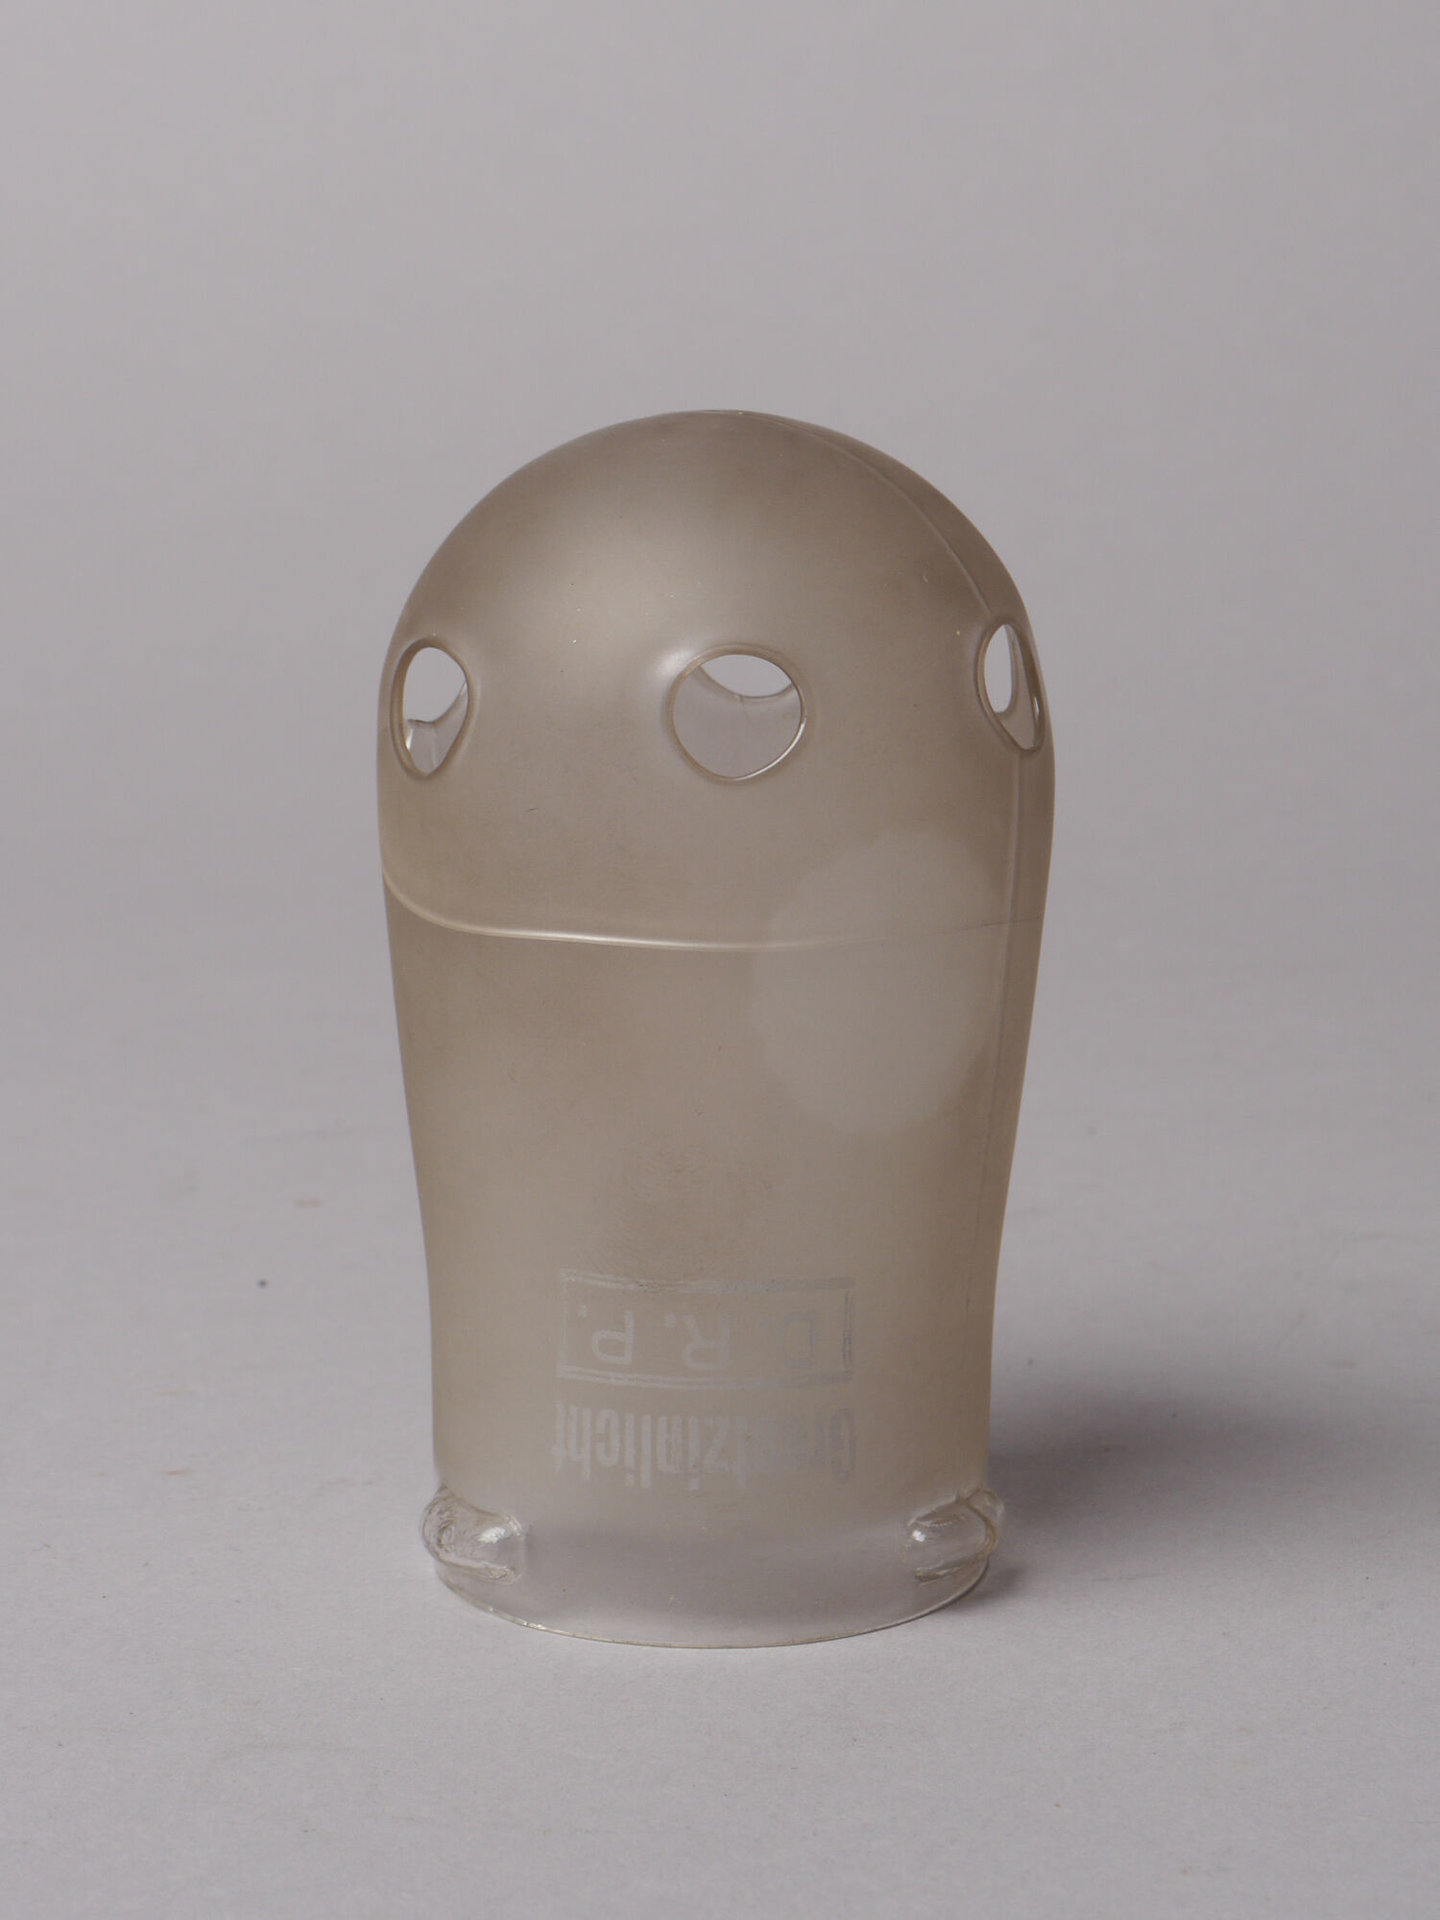 Lampenglas van het merk Graetzin voor hangend gloeikousje